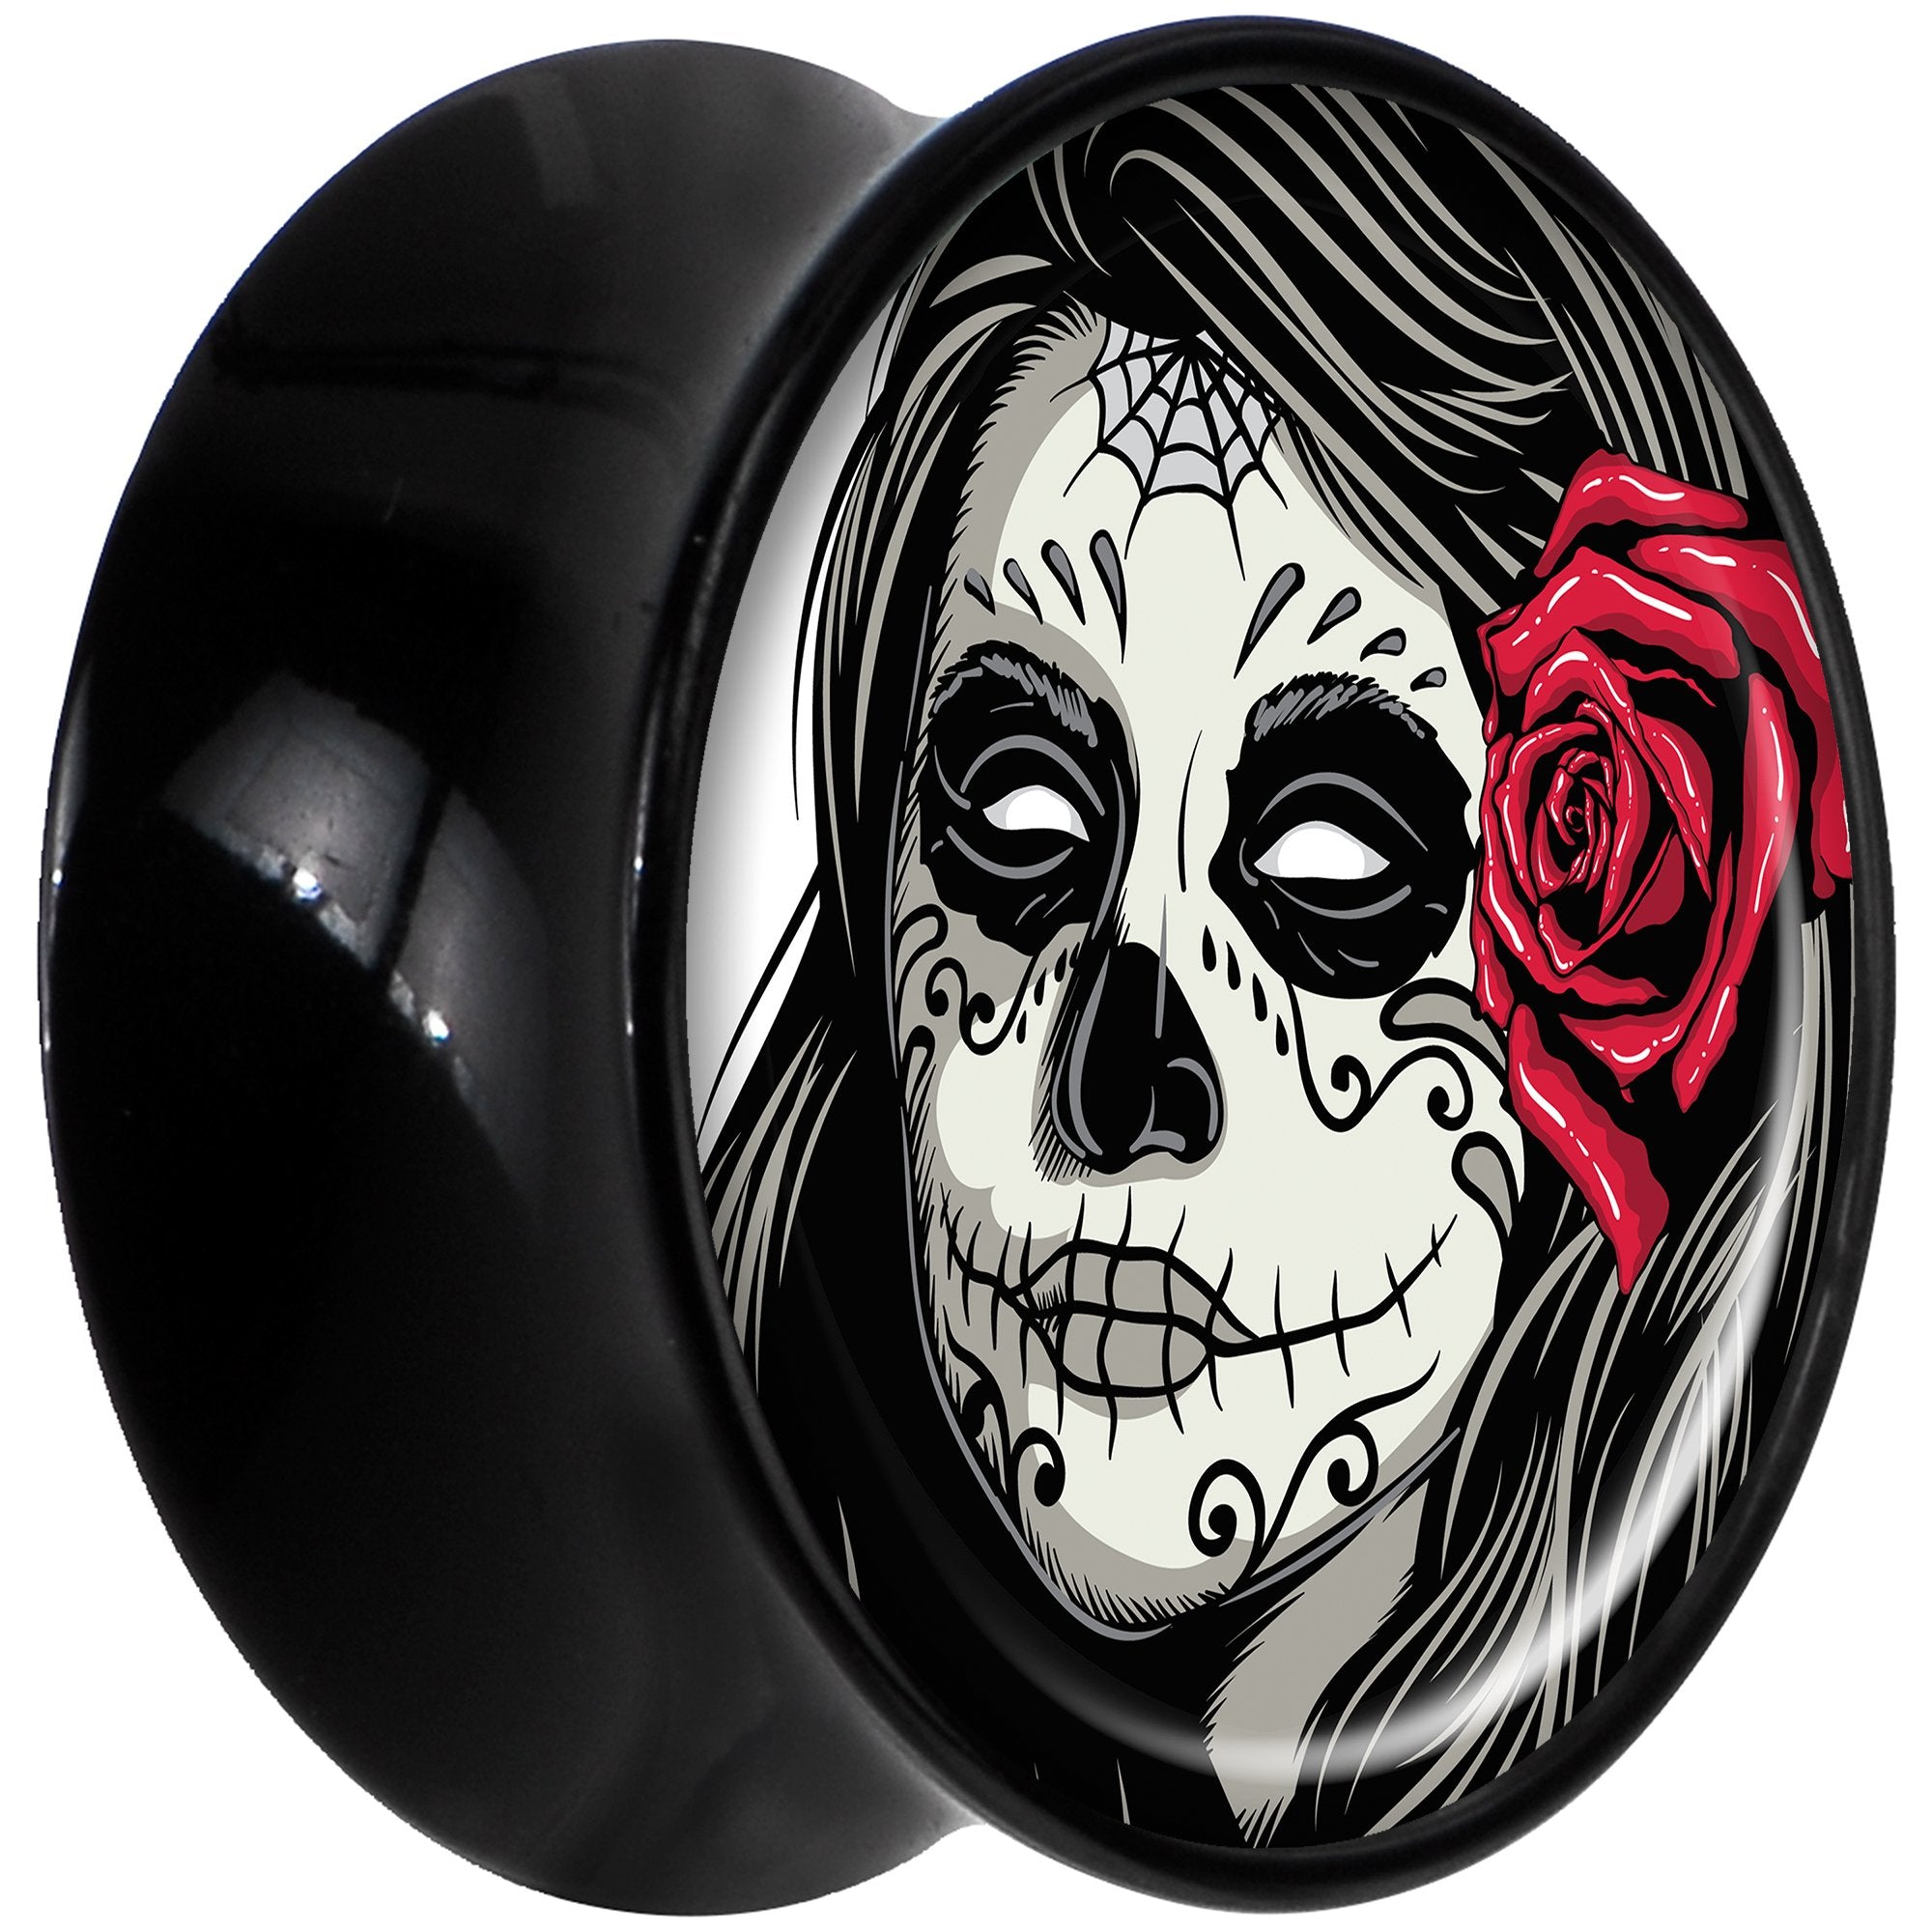 Black Acrylic Katrina Sugar Skull with Rose Flower Saddle Plug Set 9/16